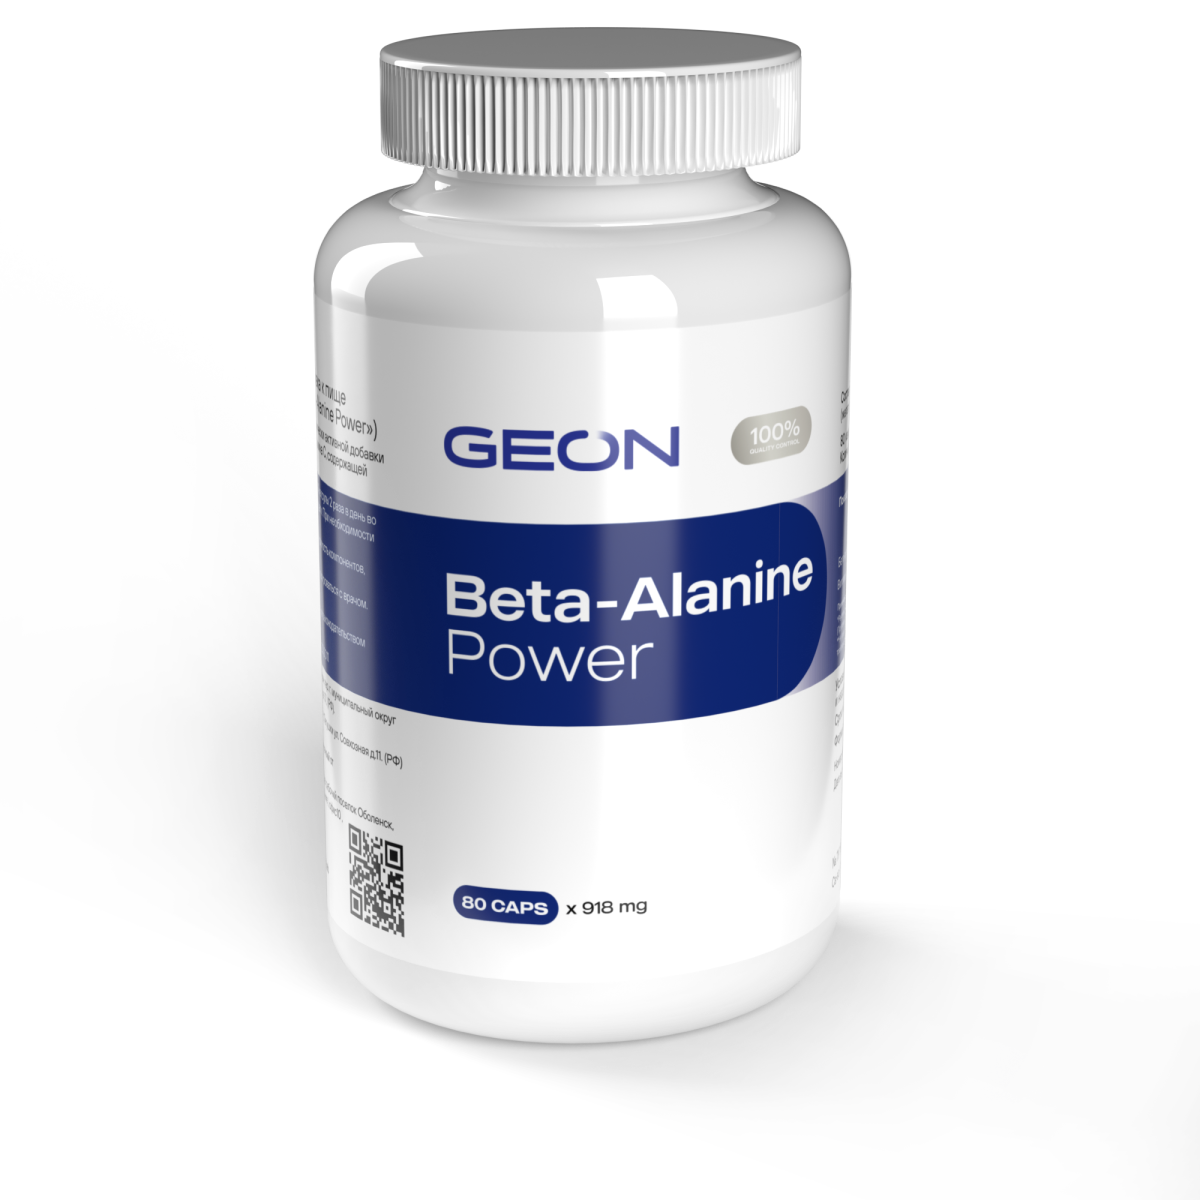 Выносливость и сила мышц GEON Beta-alanine power 80 капсул х 918 мг